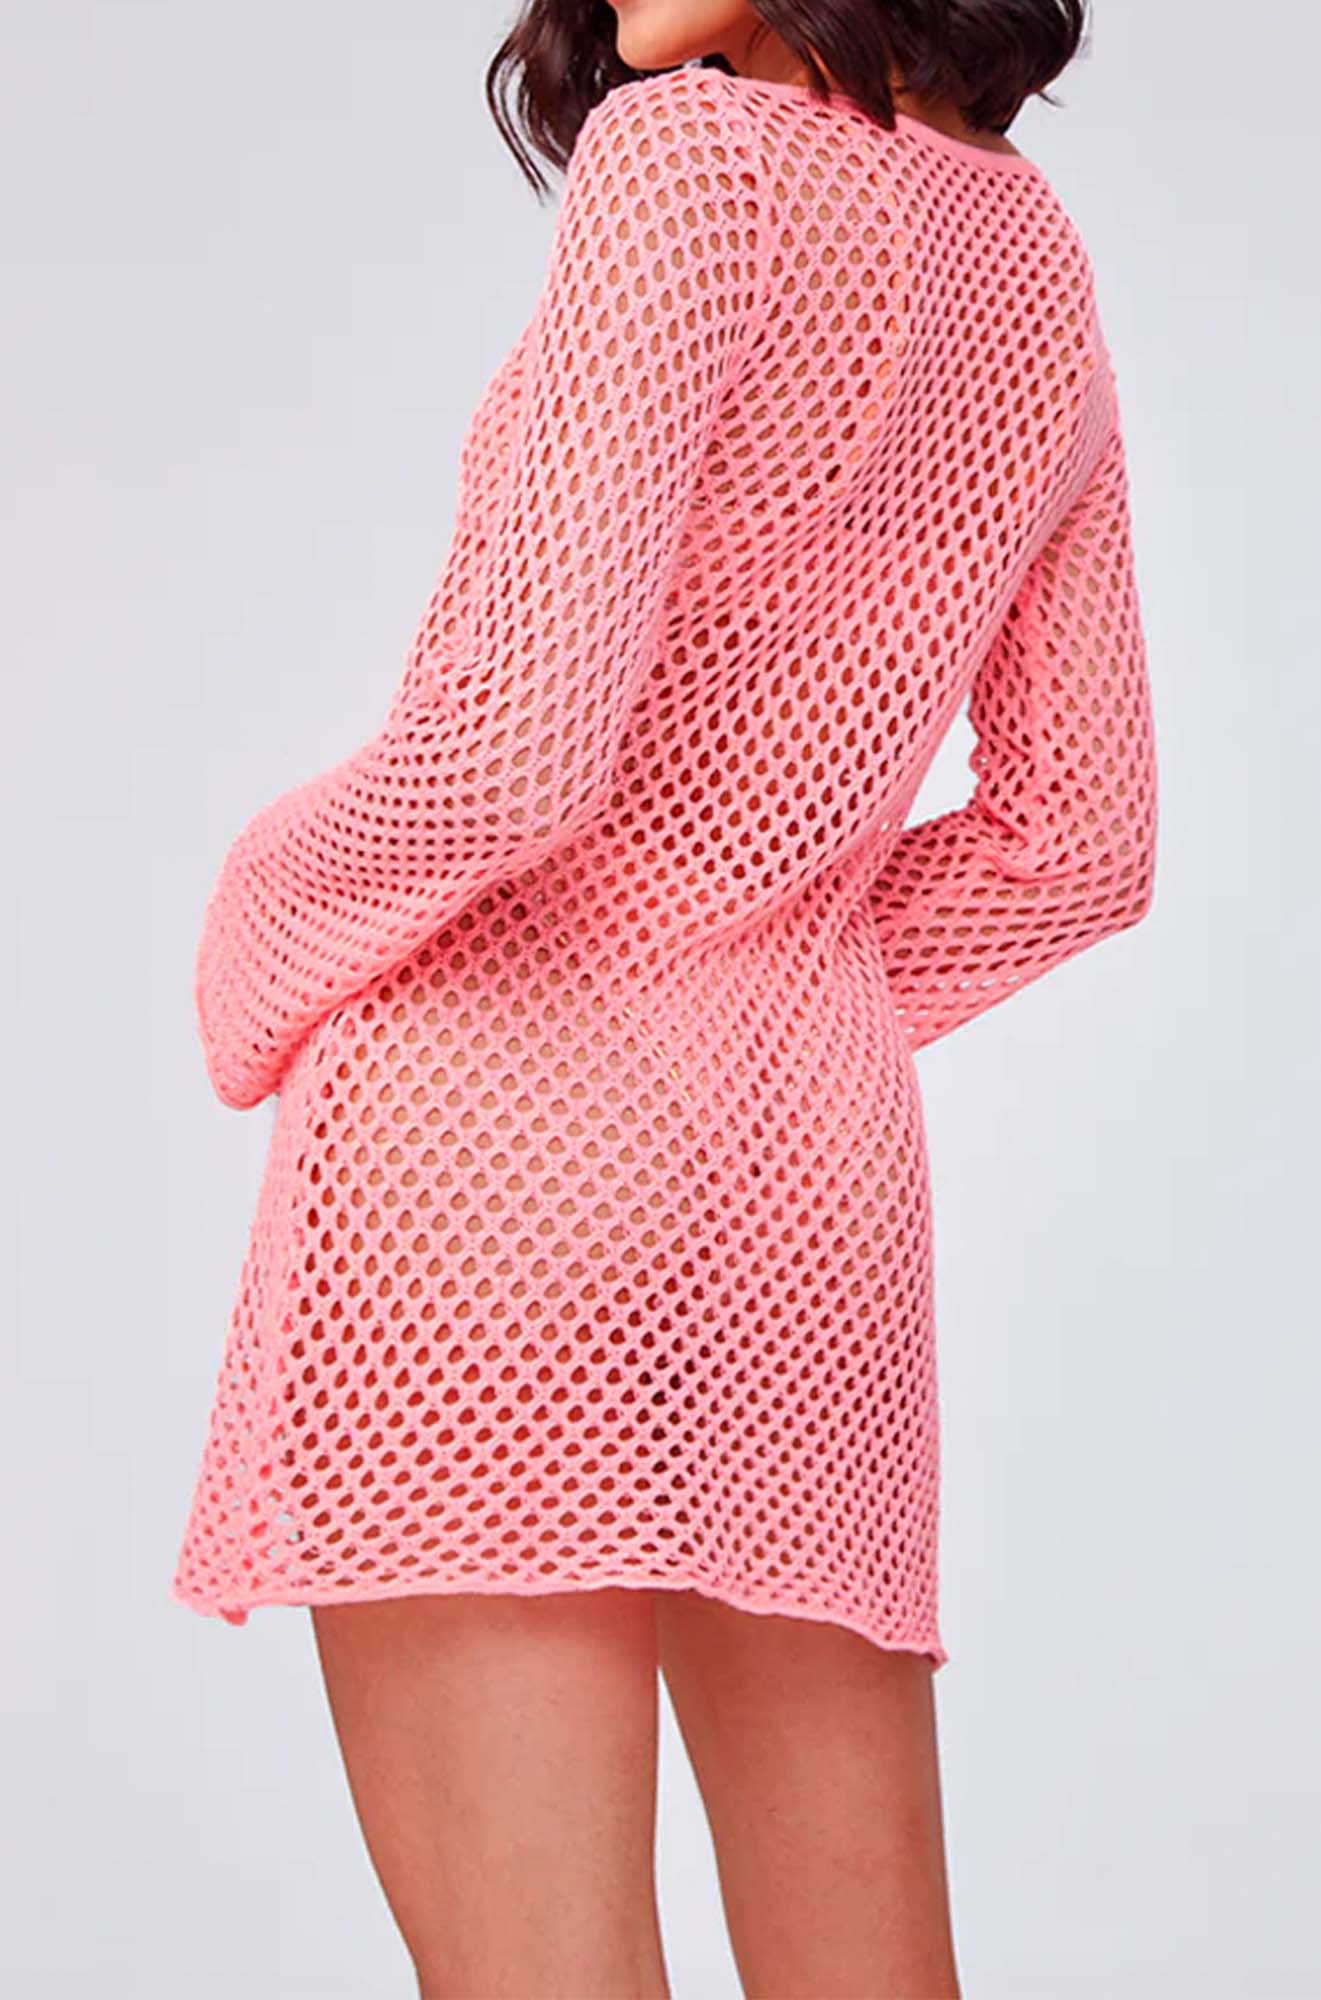 Capittana Lana Pink Crochet Dress